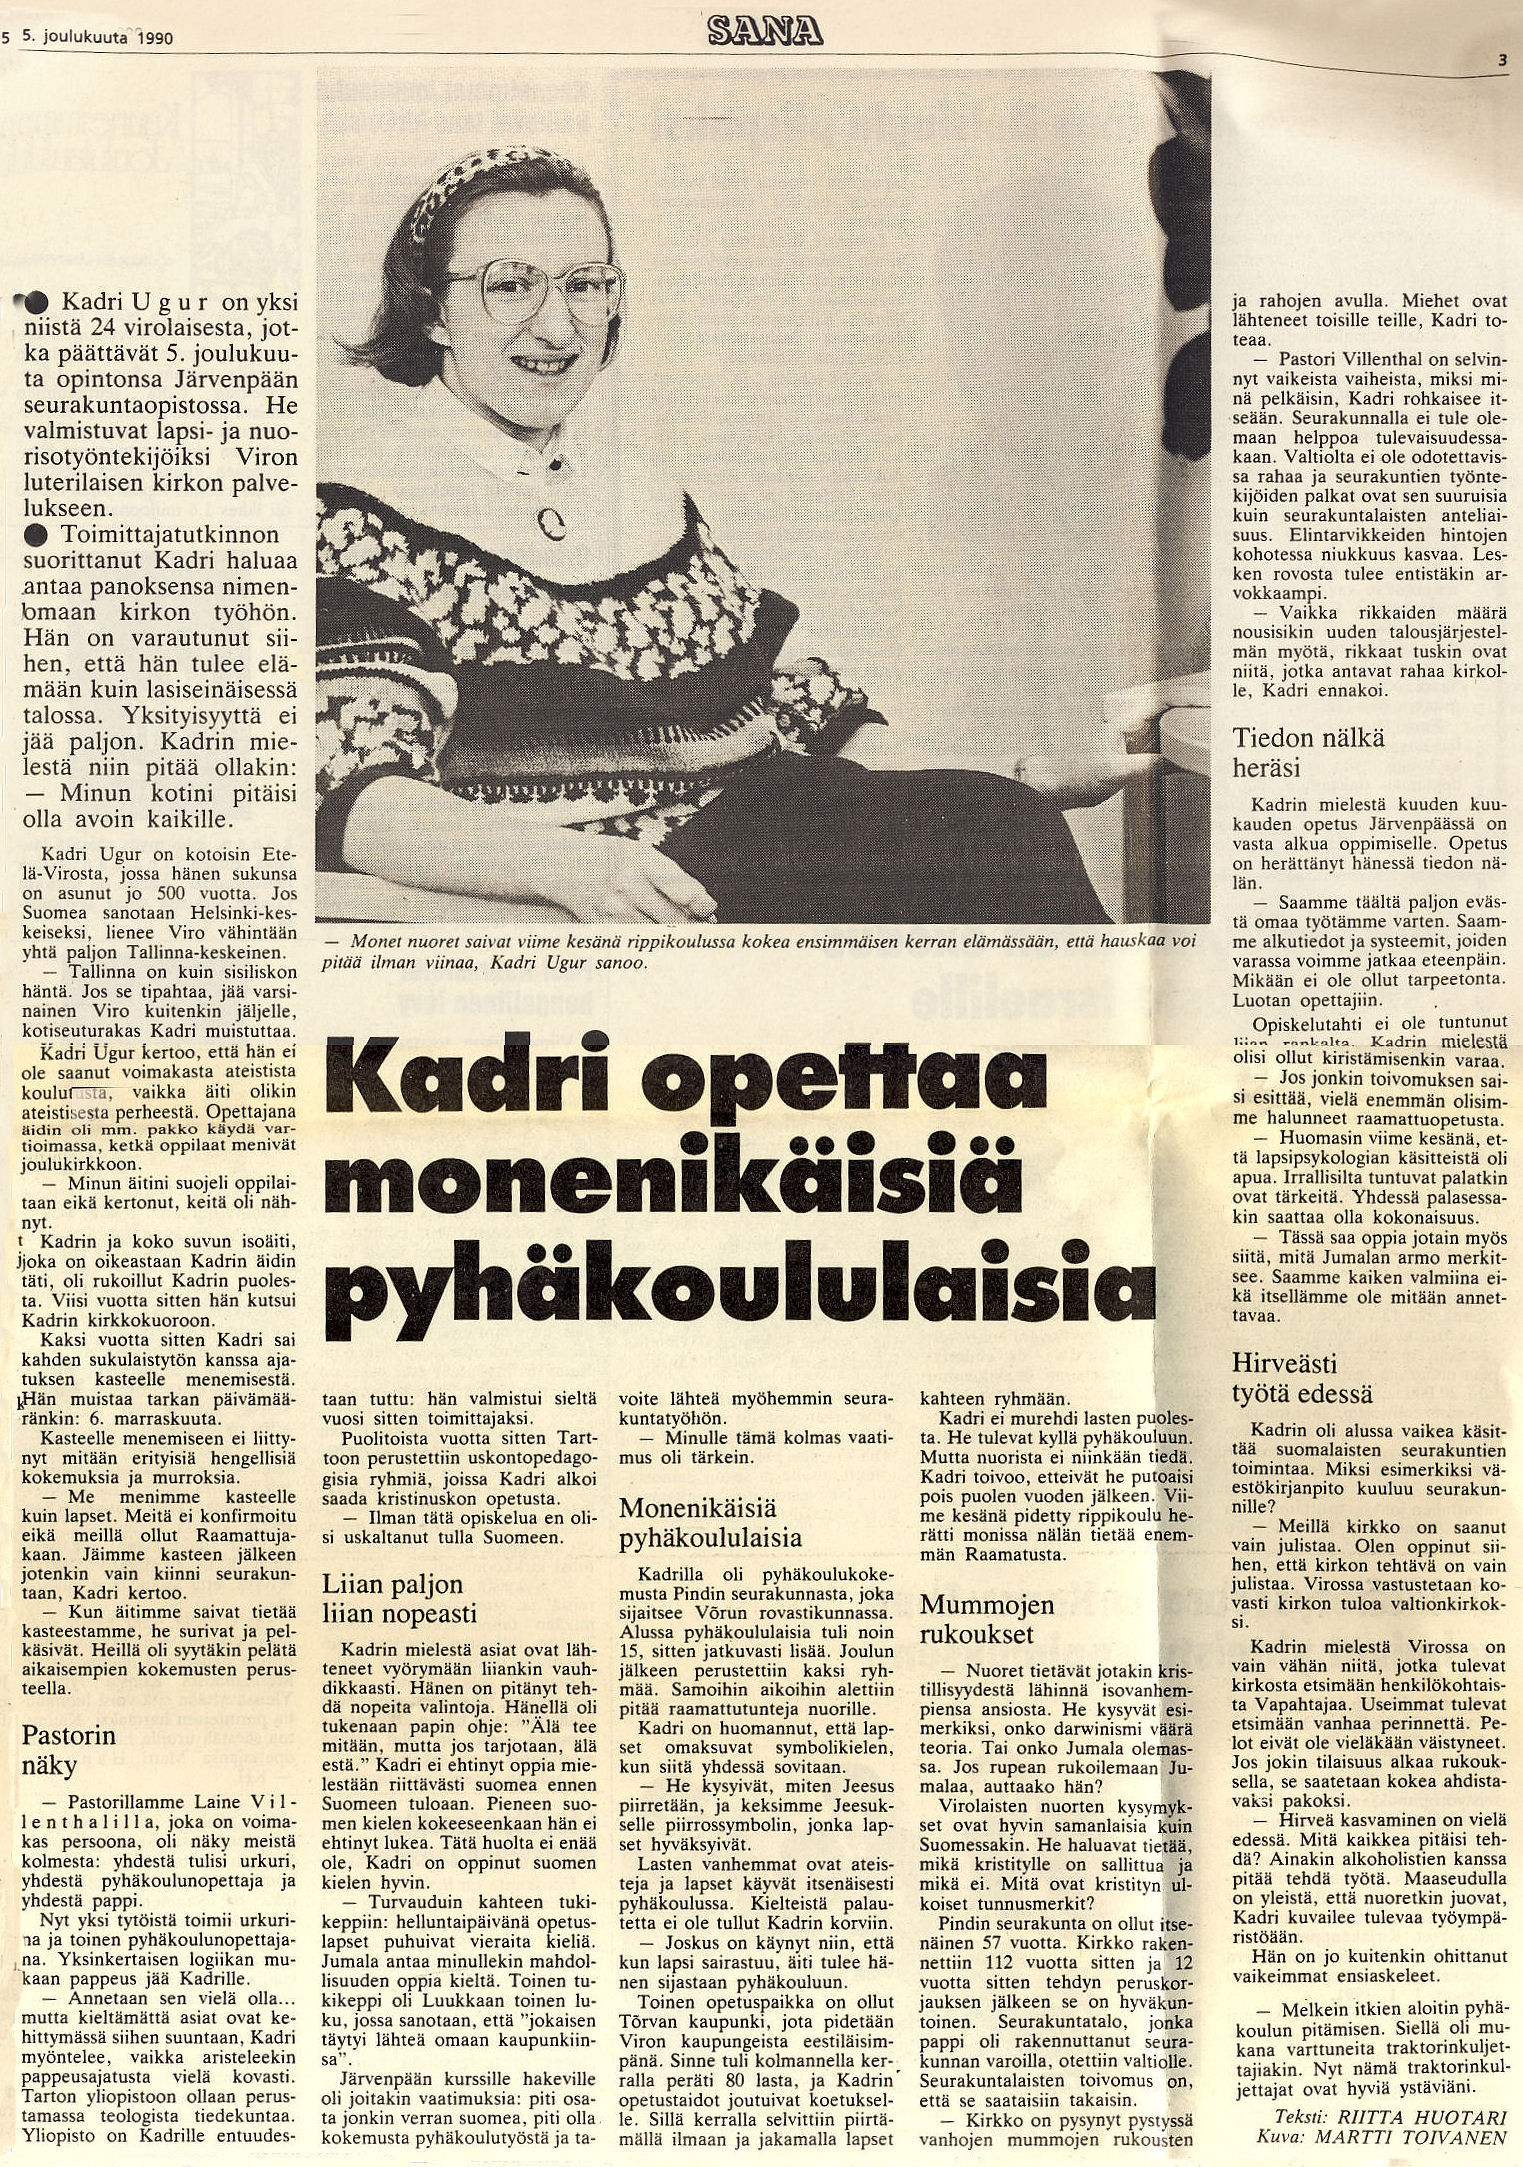 Viro-projekti Kadri Ugurin haastattelu